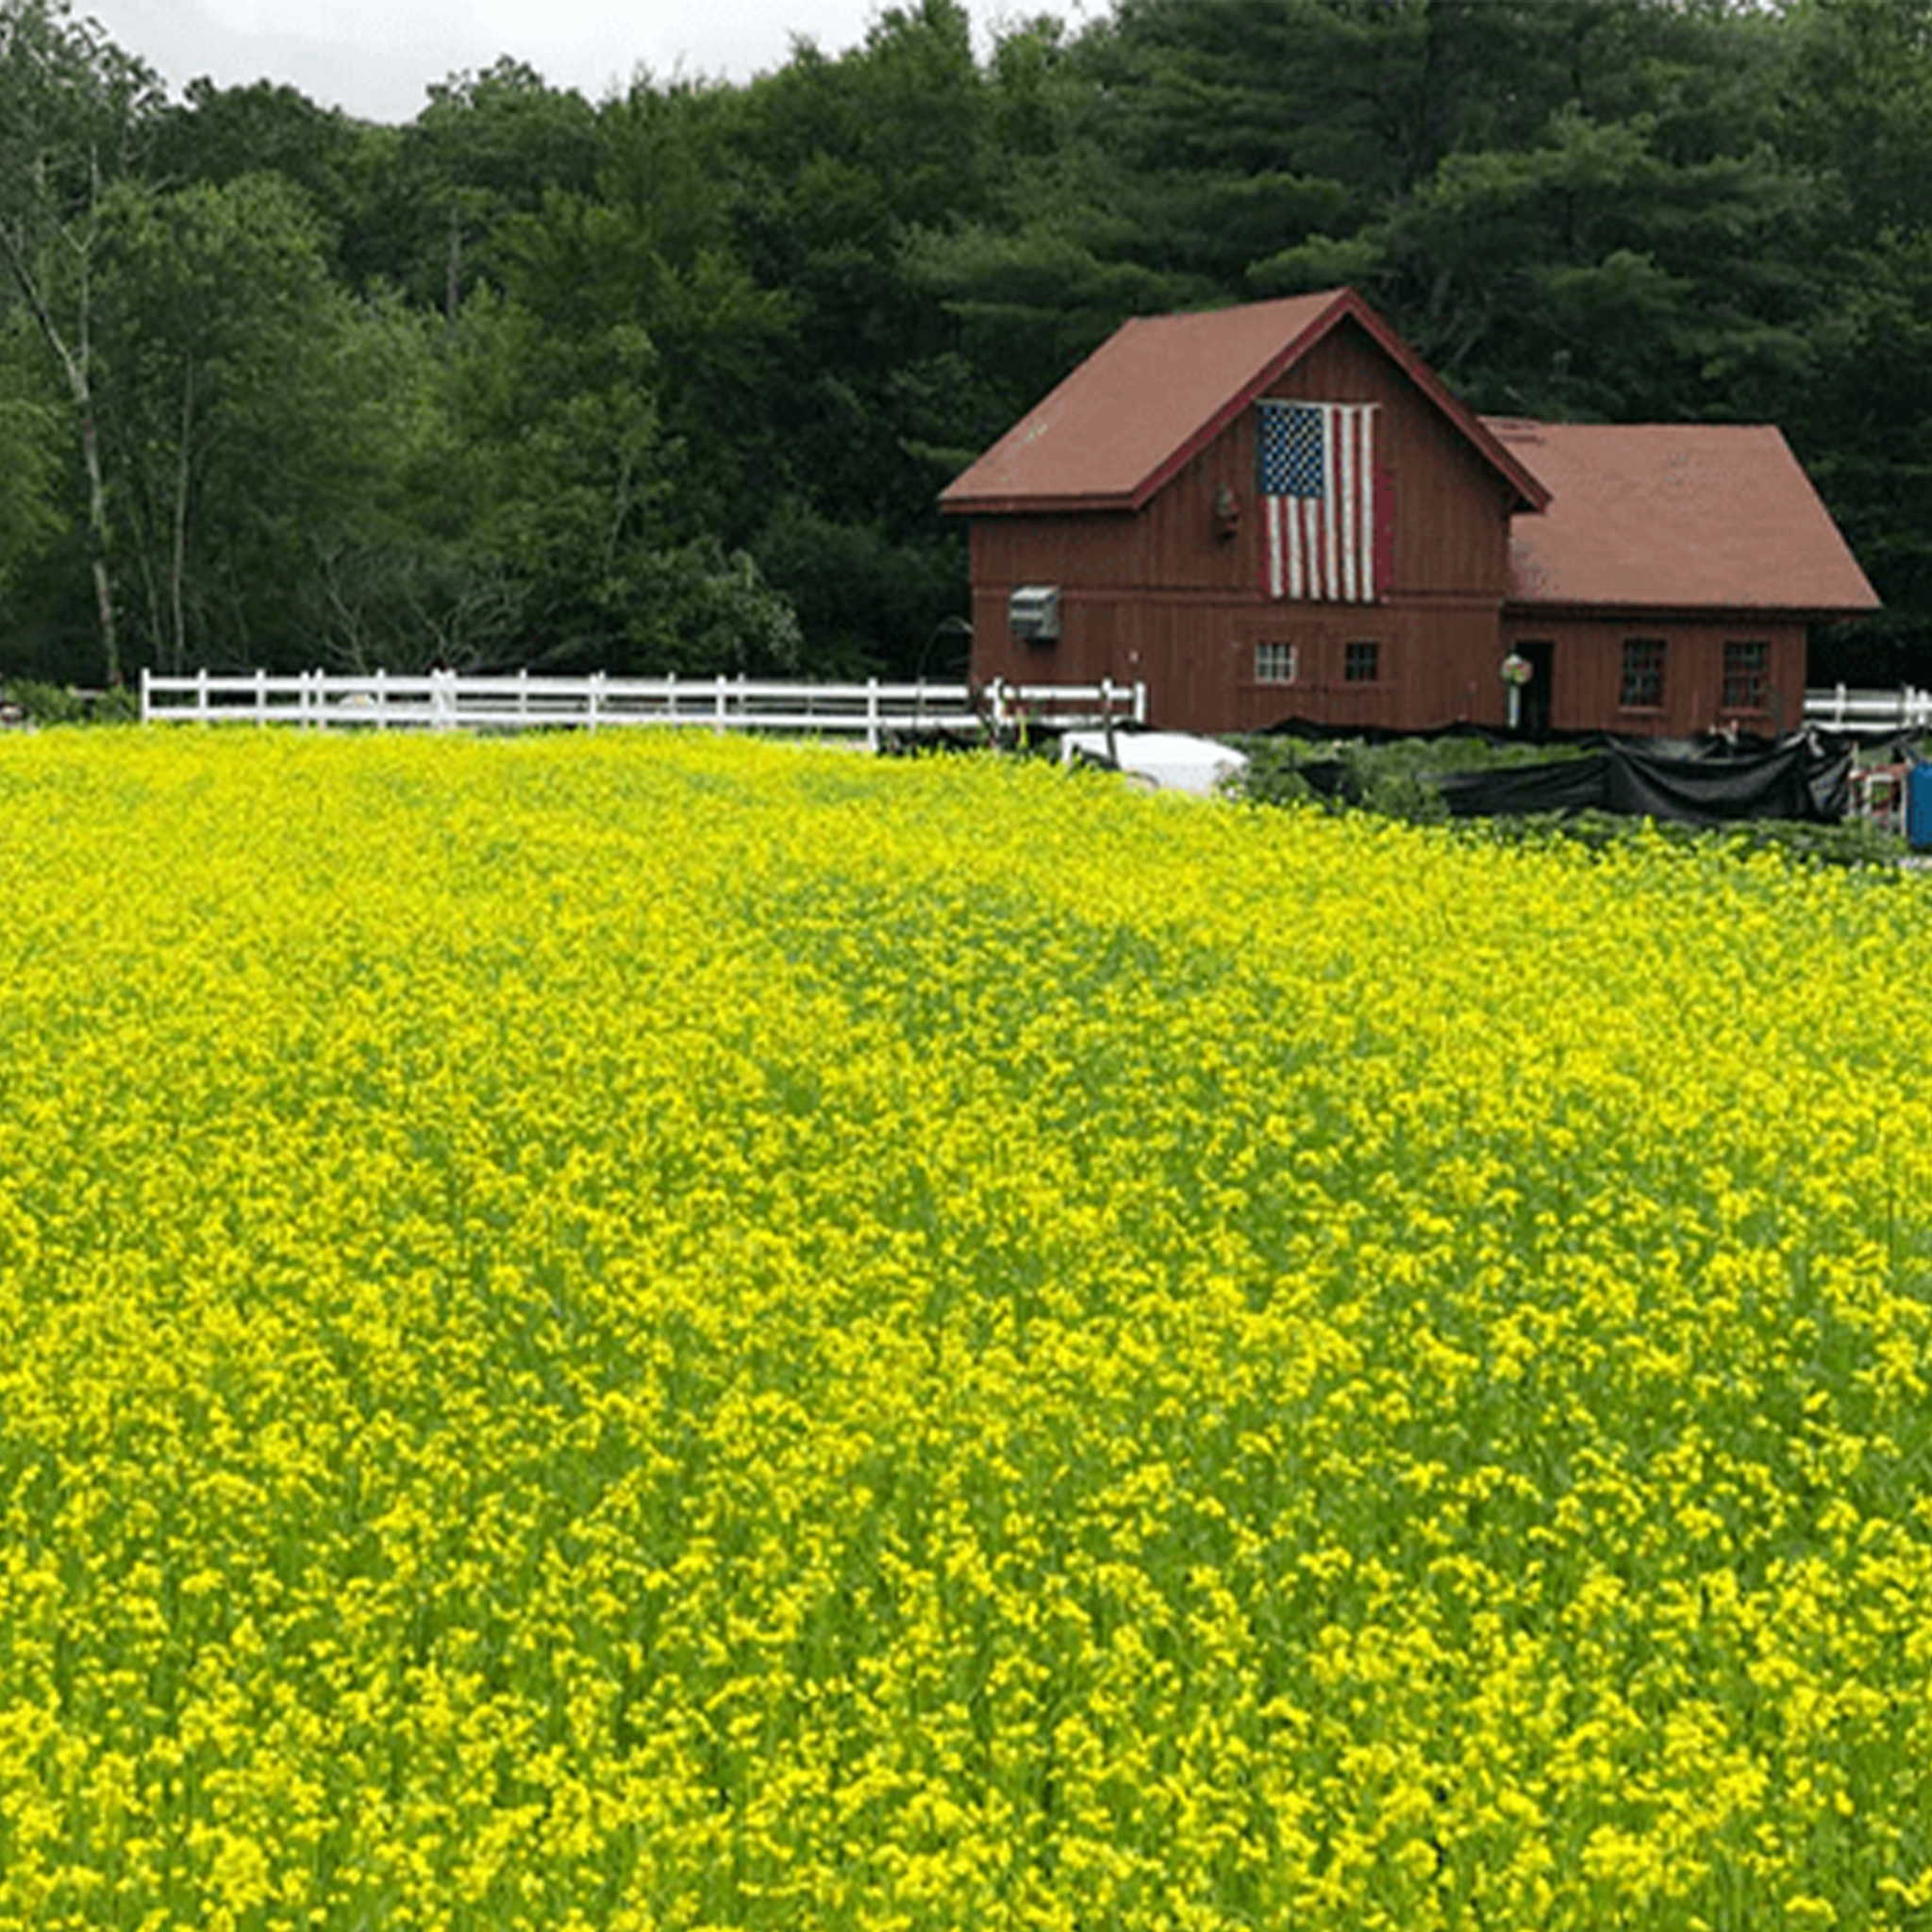 Sinapi Mustard  Highland Ledge Farm